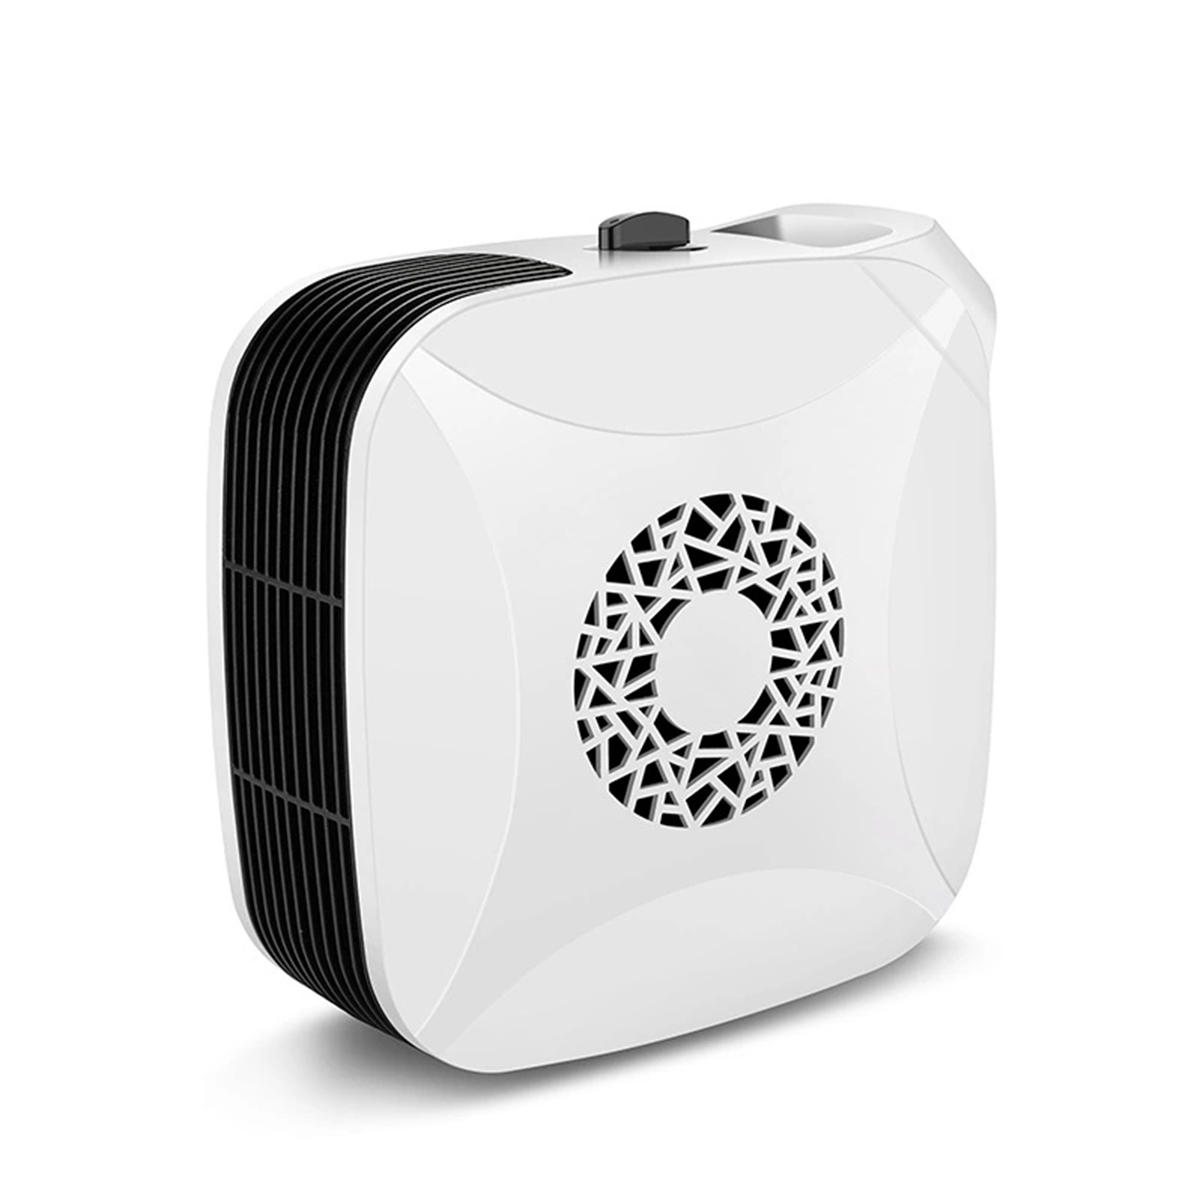 

700W 220V Mini Electric Heater Fan Low Noise Warm Air Blower for Office Home Desktop Floor